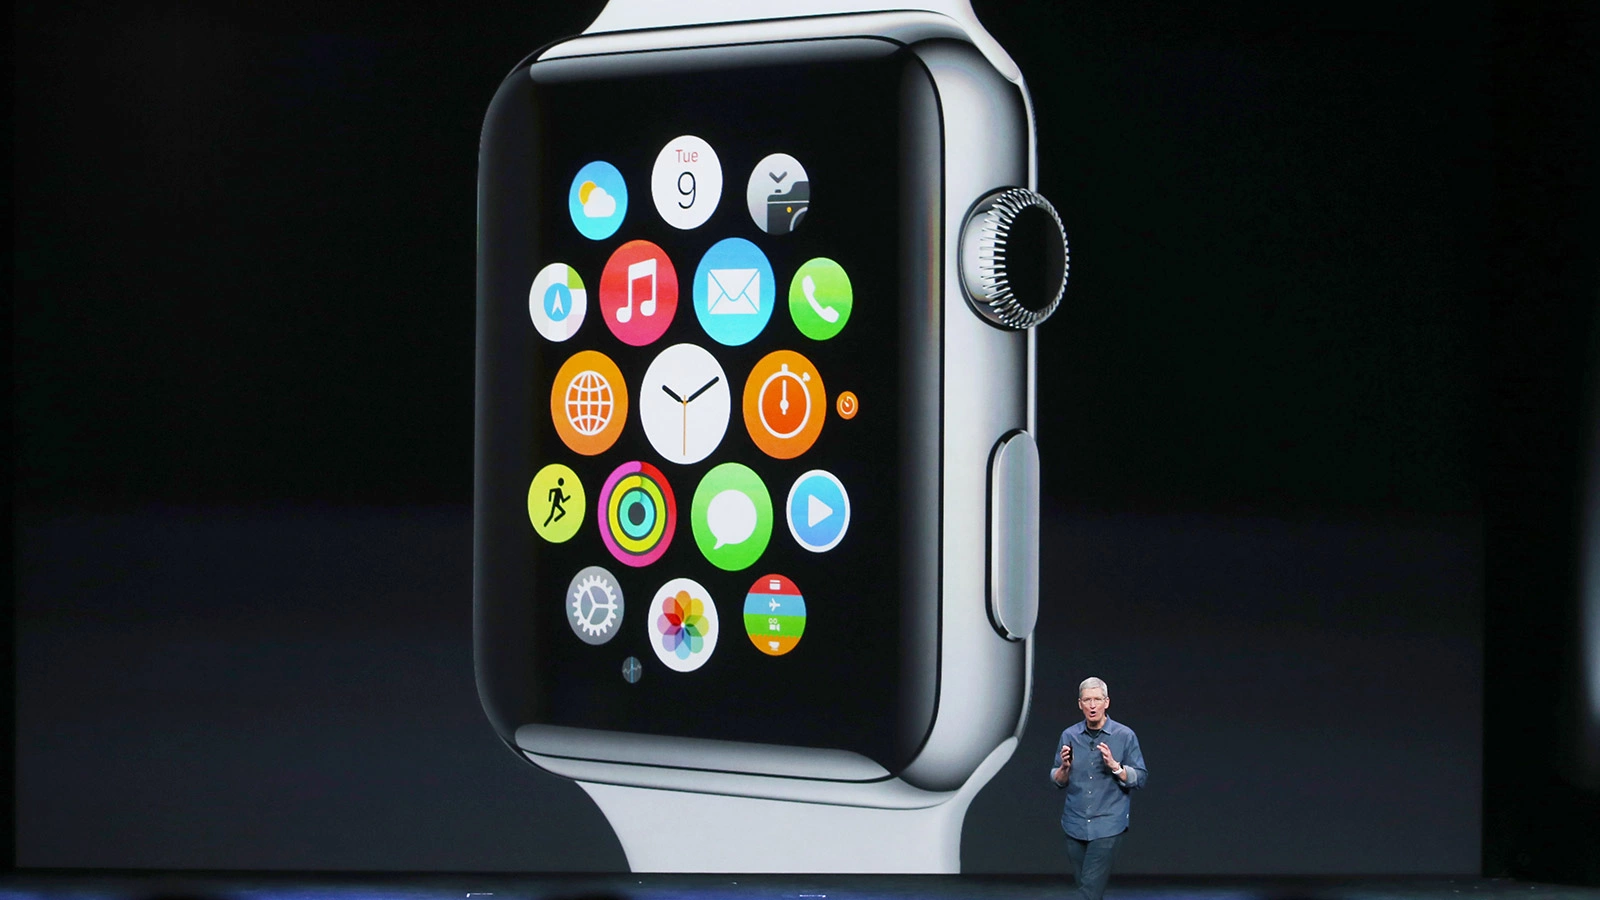 <p>На фото: генеральный директор Apple Тим Кук рассказывает об Apple Watch во время специального мероприятия Apple в Центре Flint 9 сентября 2014 года в Купертино, Калифорния. Тогда компания представила Apple Watch и два новых iPhone&nbsp;&mdash; iPhone 6 и iPhone 6 Plus</p>